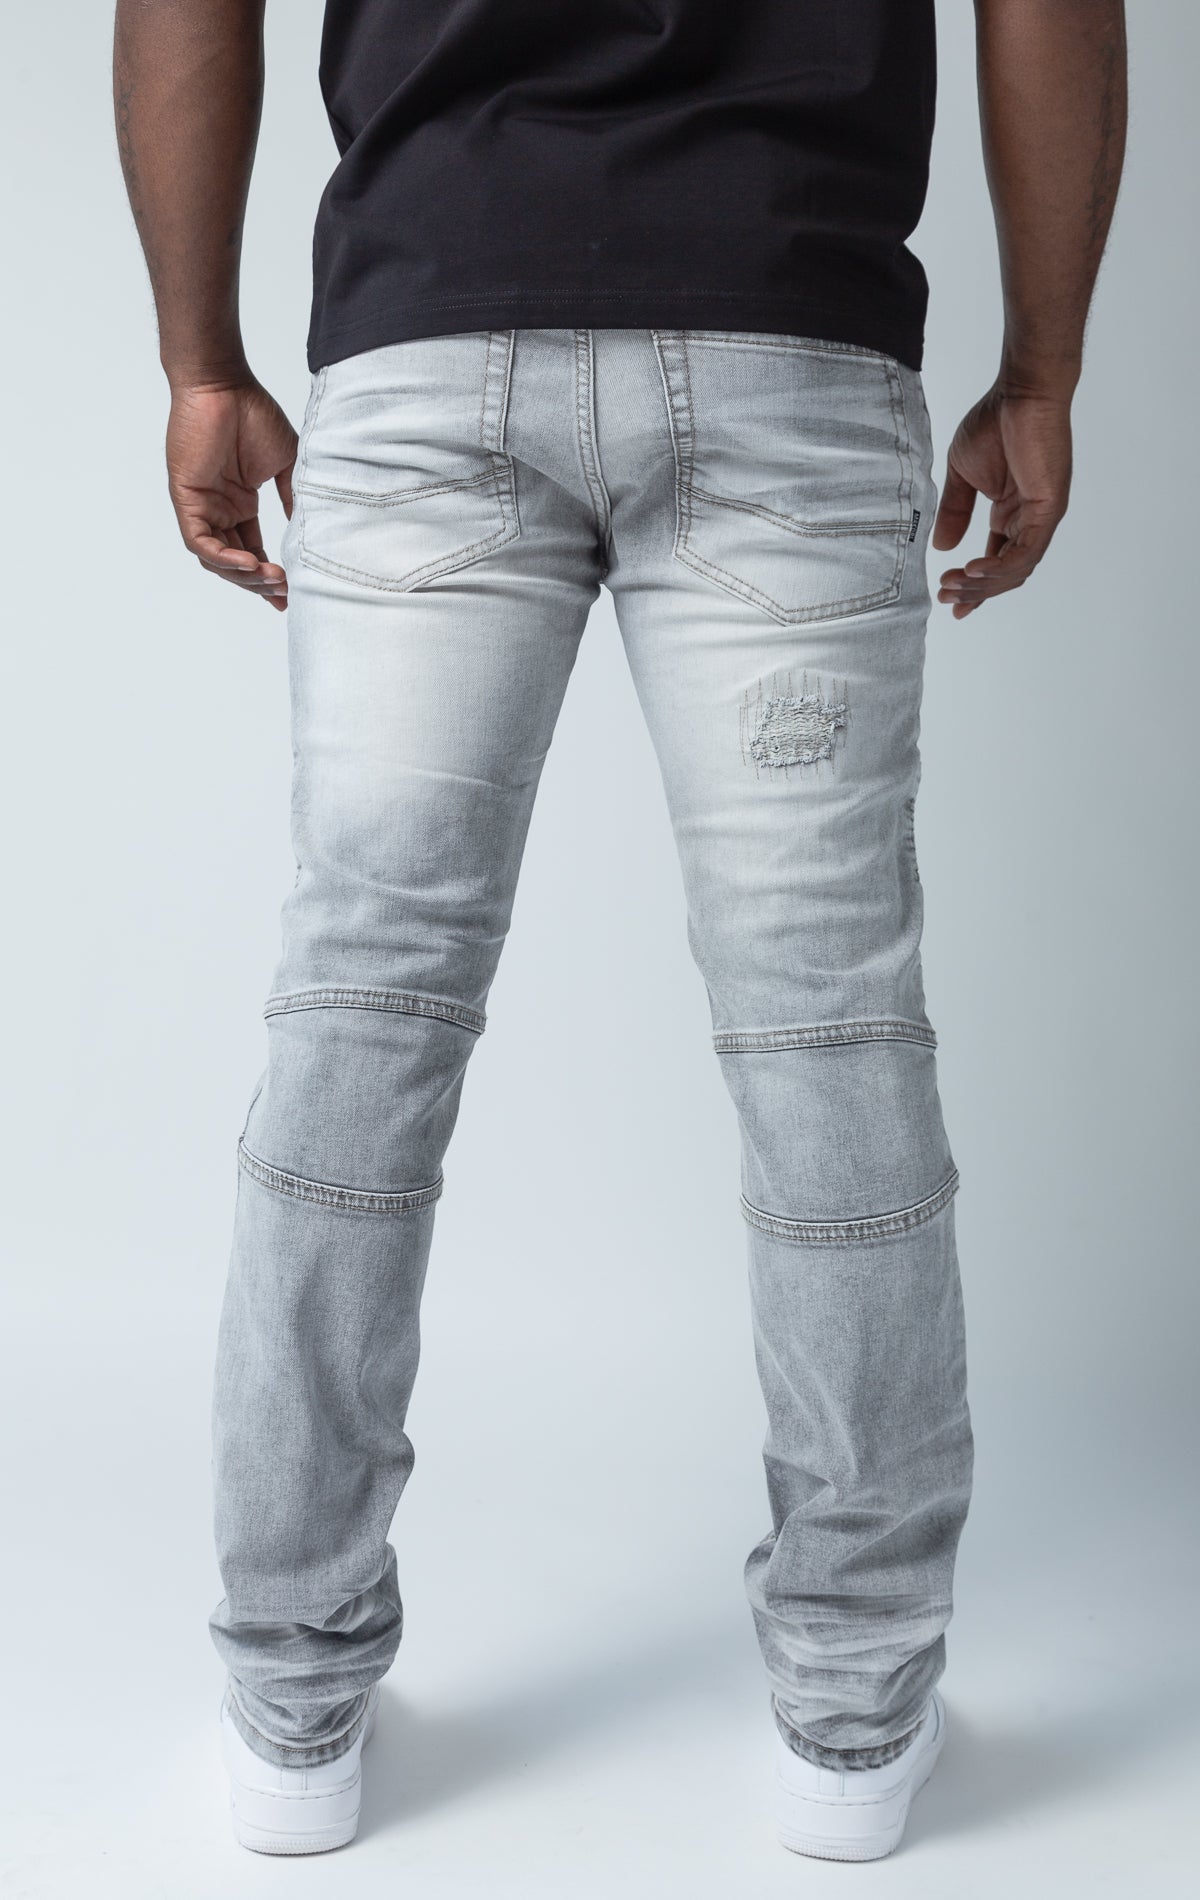 Grey pants with rip and repair design and slim fit